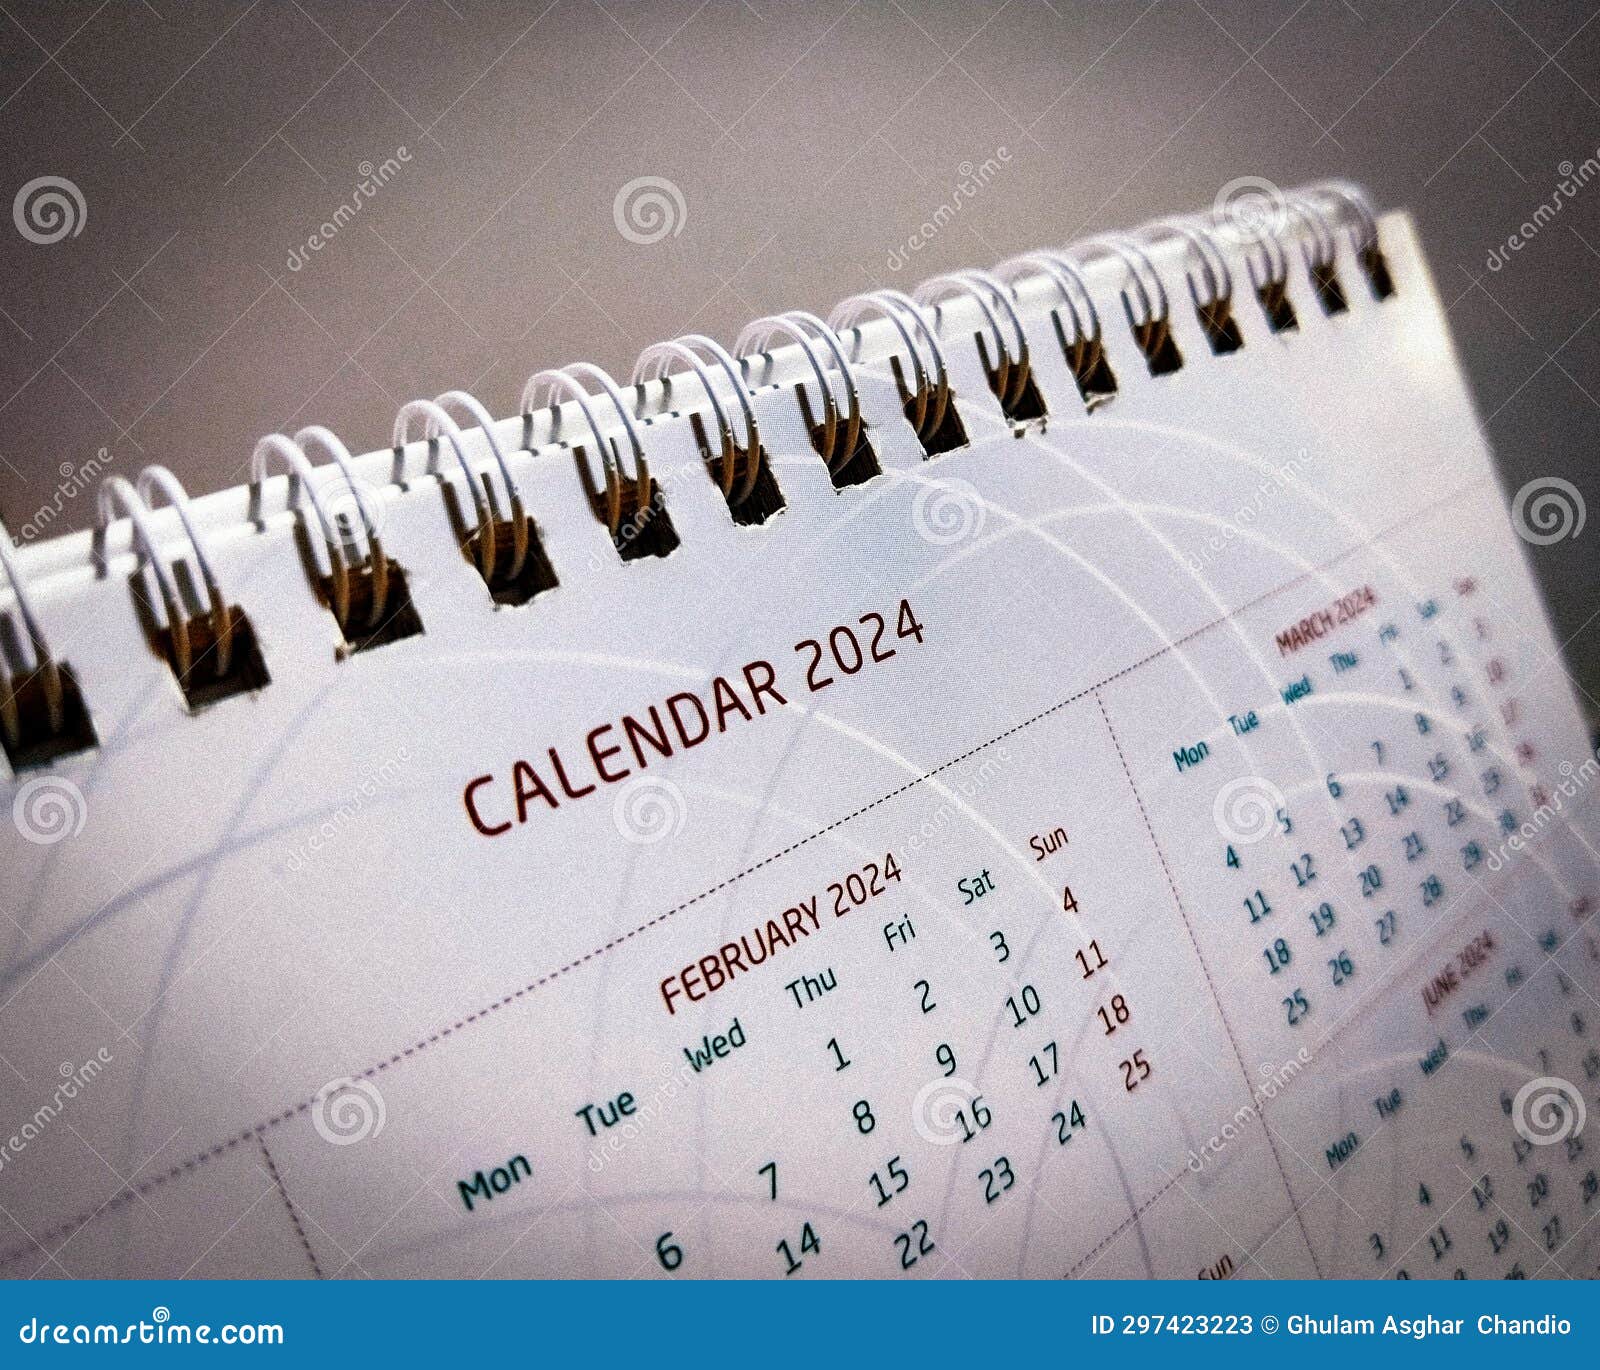 new year calendar 2024 organizer planner tablecalendar new-calendar kalender calendrier calendario image photo